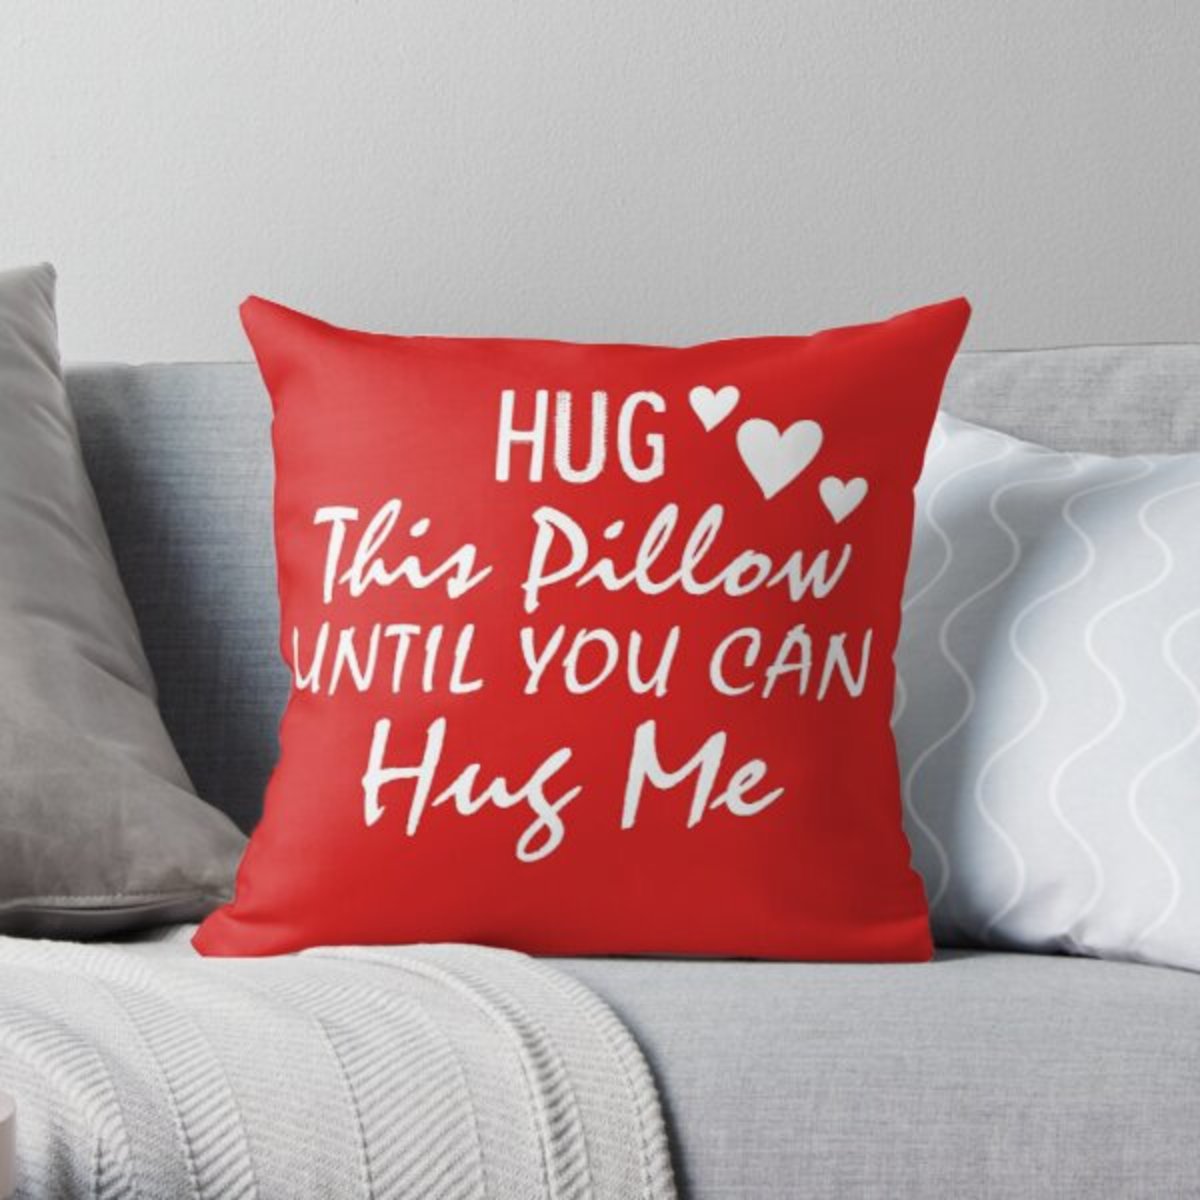 Hug pillow